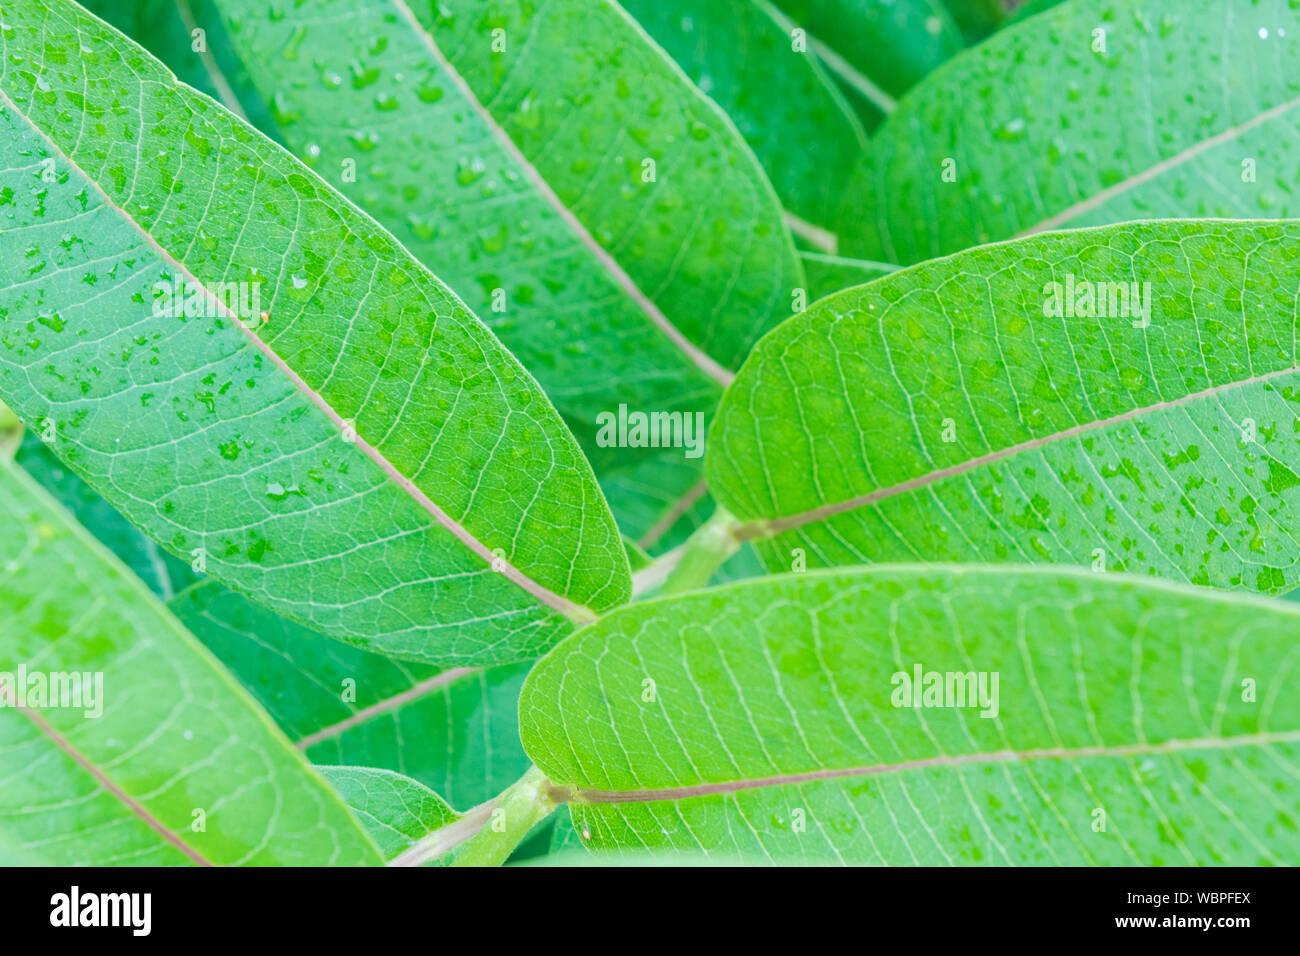 Grüne Blätter in Tropfen Tau, Nahaufnahme. Lebendige grünen Farben der Pflanzen, frische, reine Natur Konzept Stockfoto